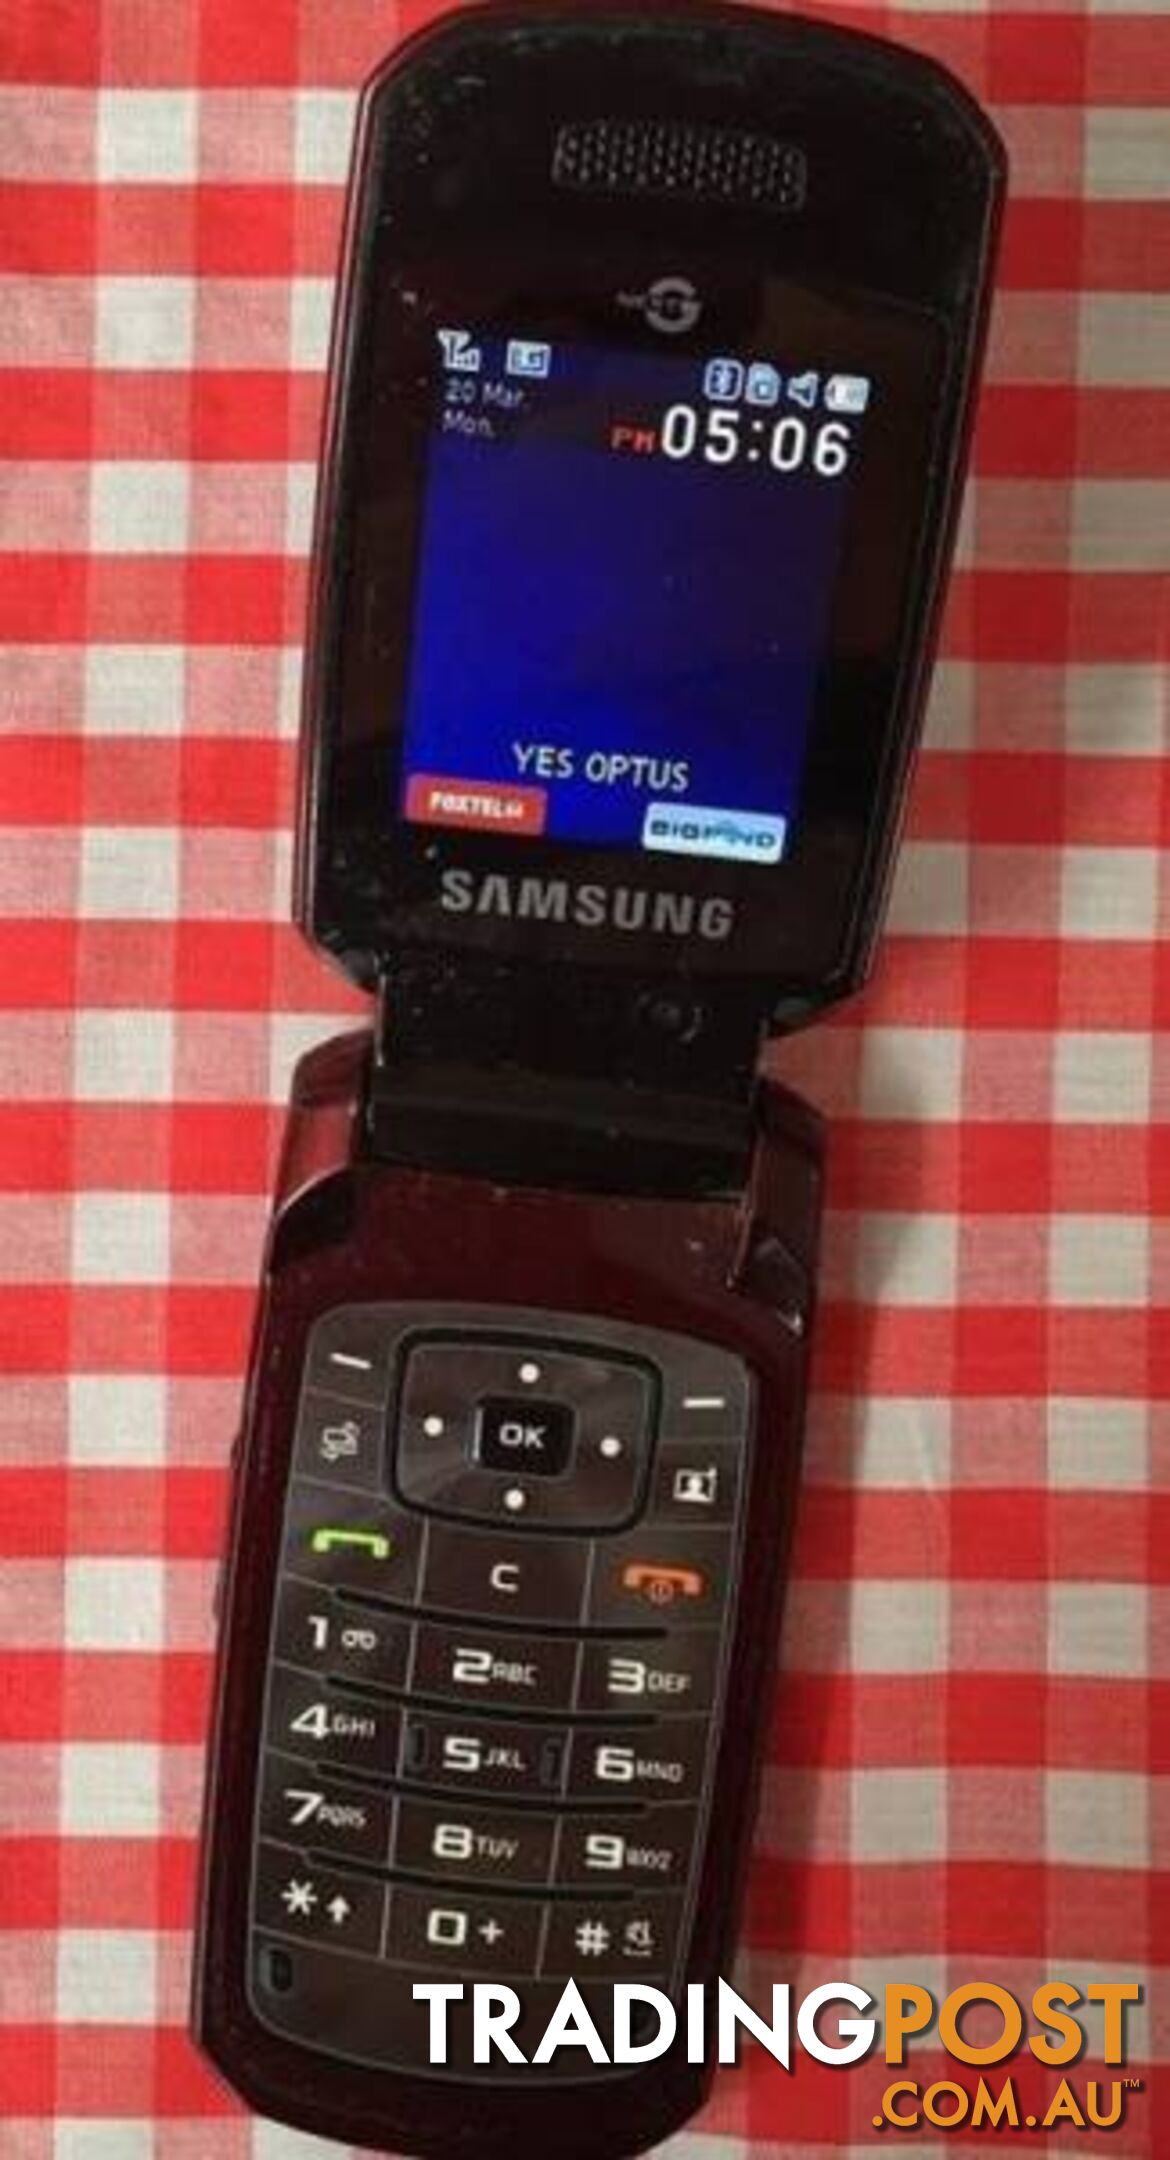 SAMSUNG FLIP PHONE 3.2 MP CAMERA (UNLOCKED)